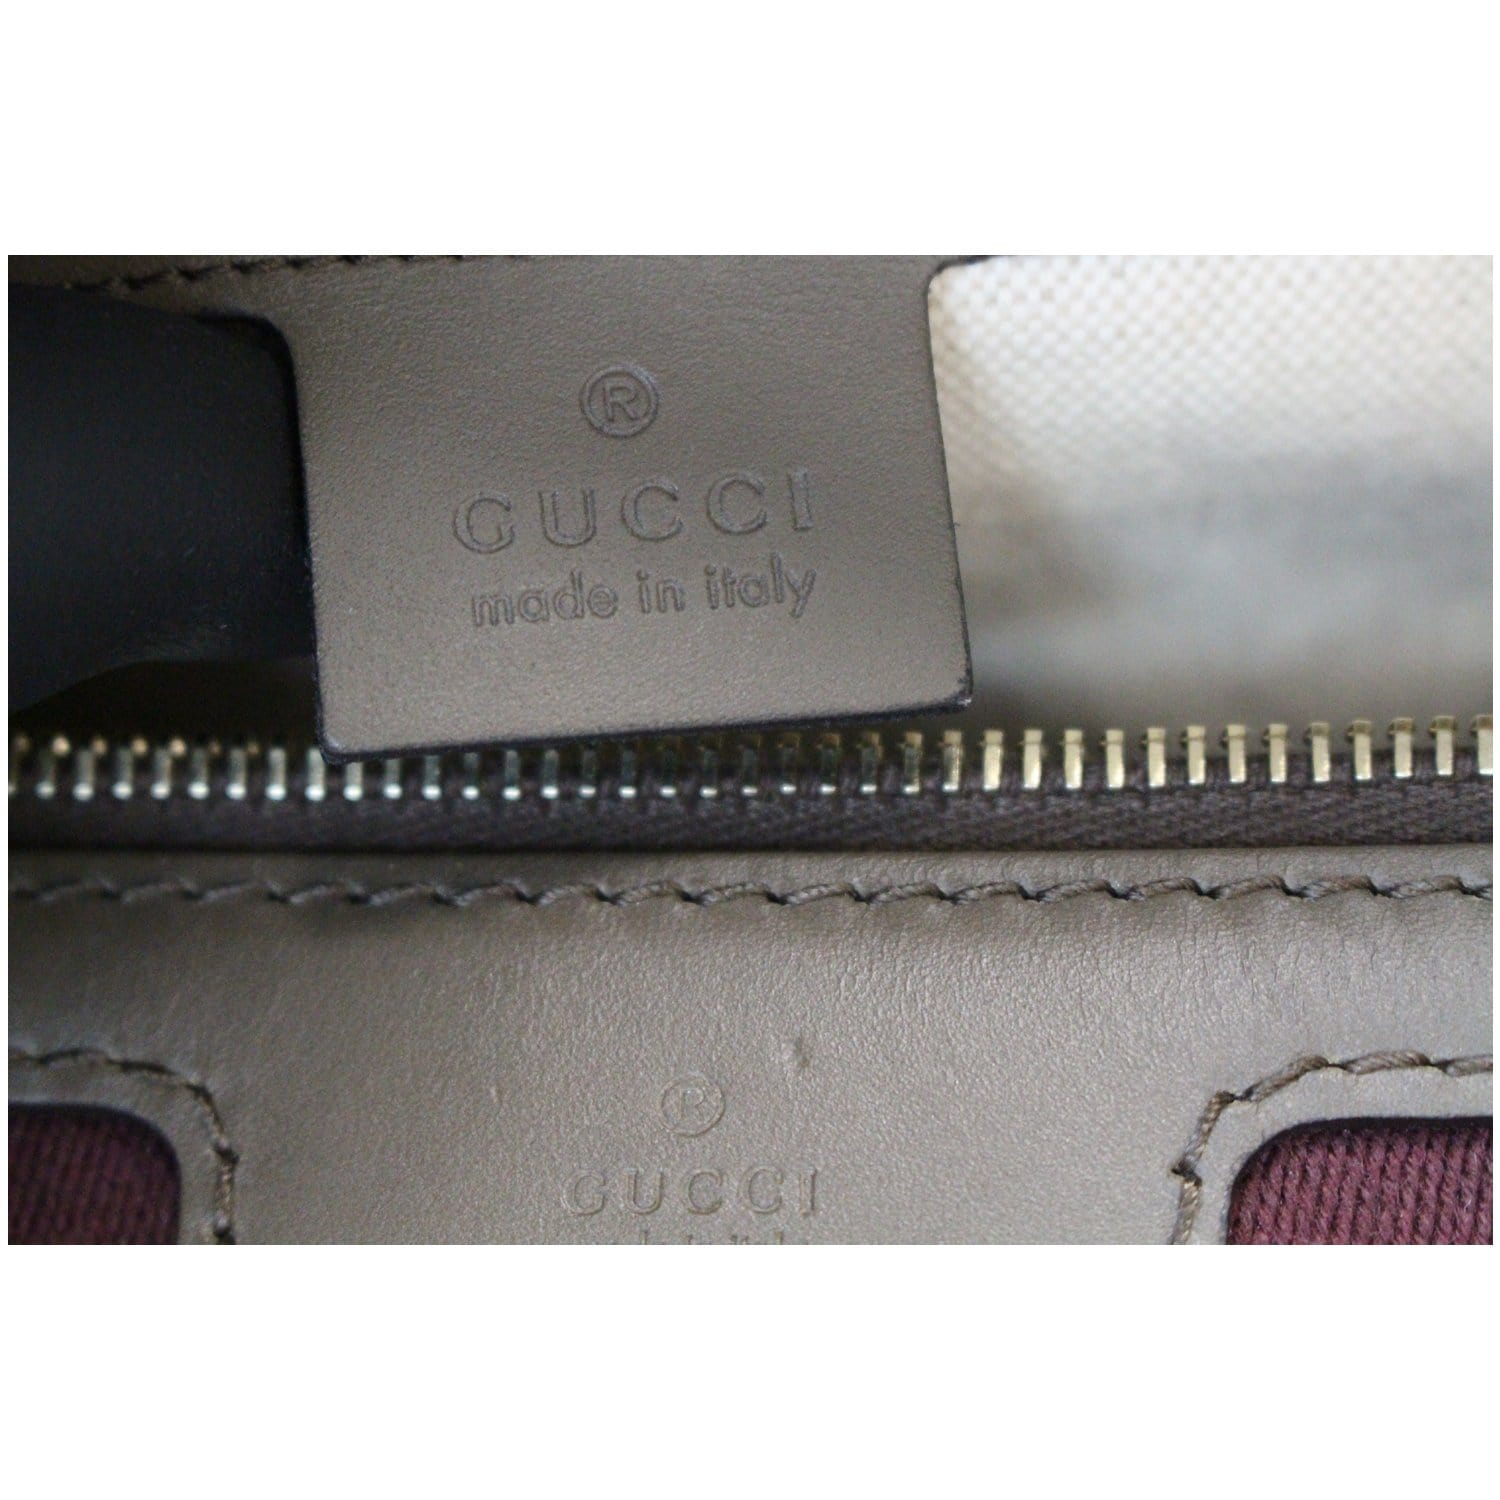 Gucci Vintage Web Original GG Boston Bag - Multicolor